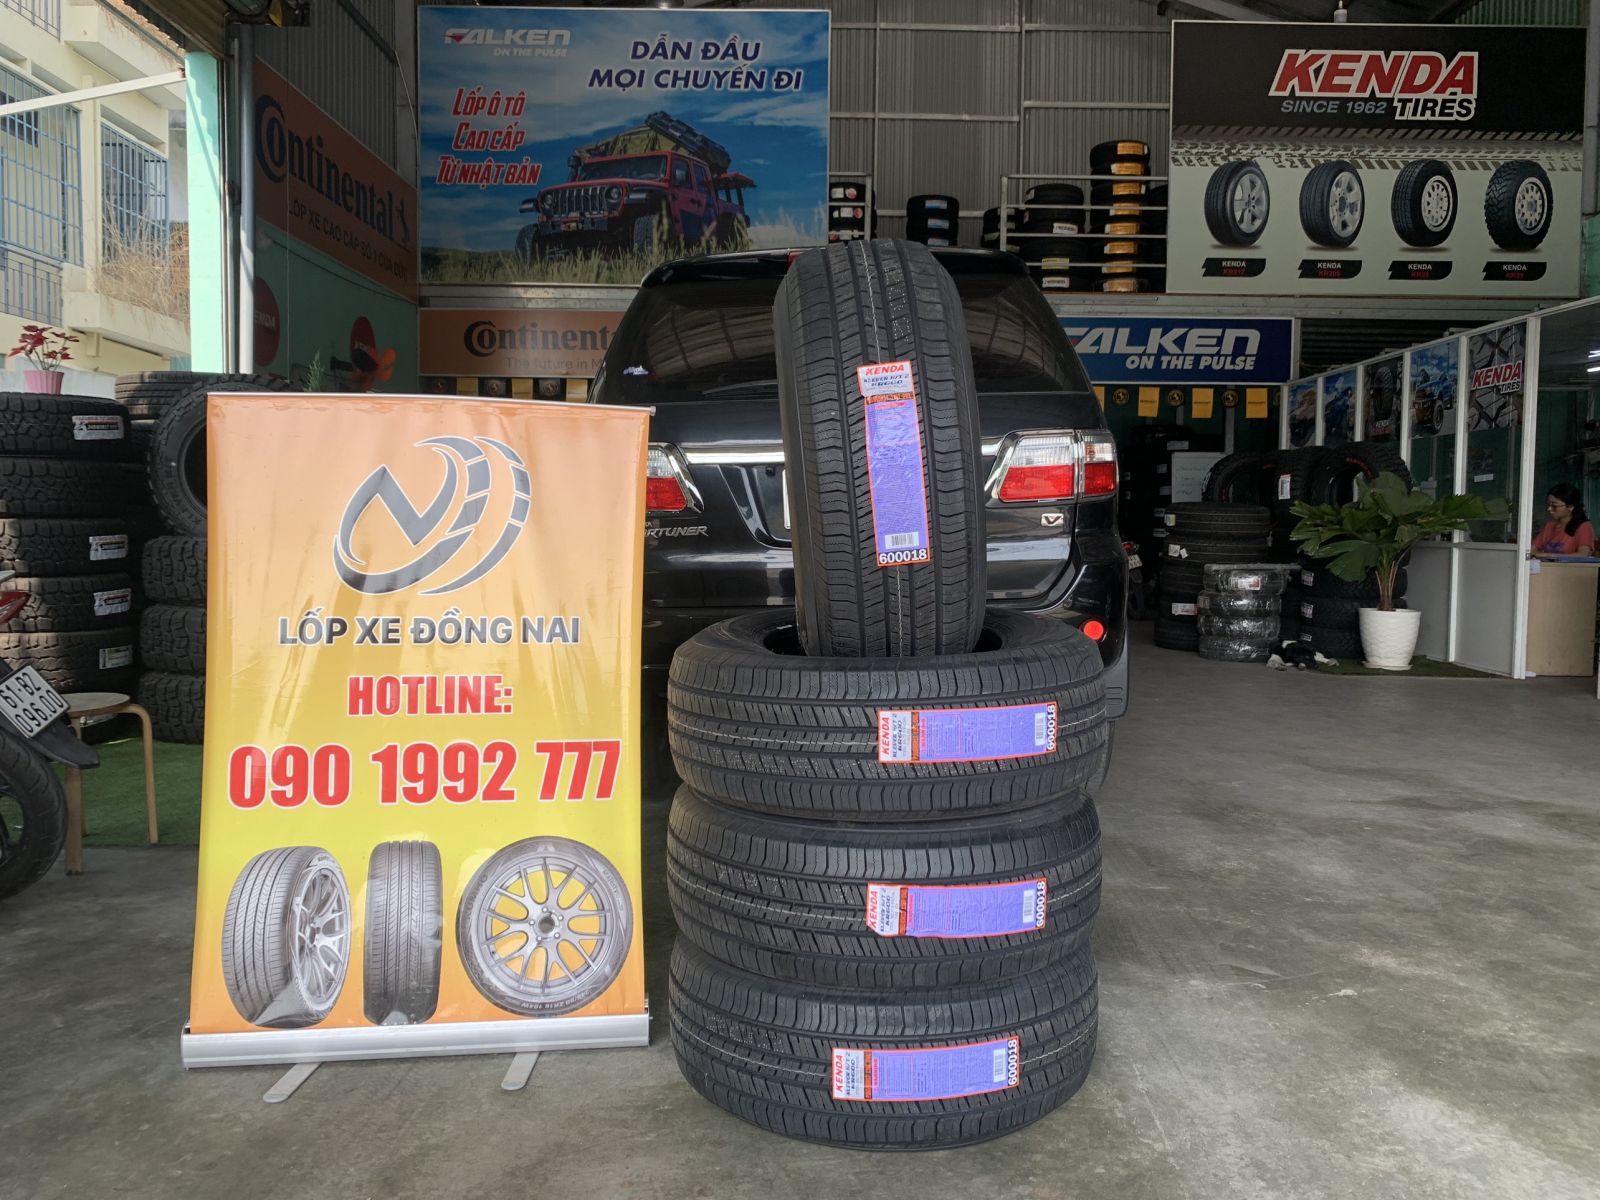 TƯ VẤN : Thay lốp xe Toyota Fortuner chính hãng ở Trảng Bom, Đồng Nai.